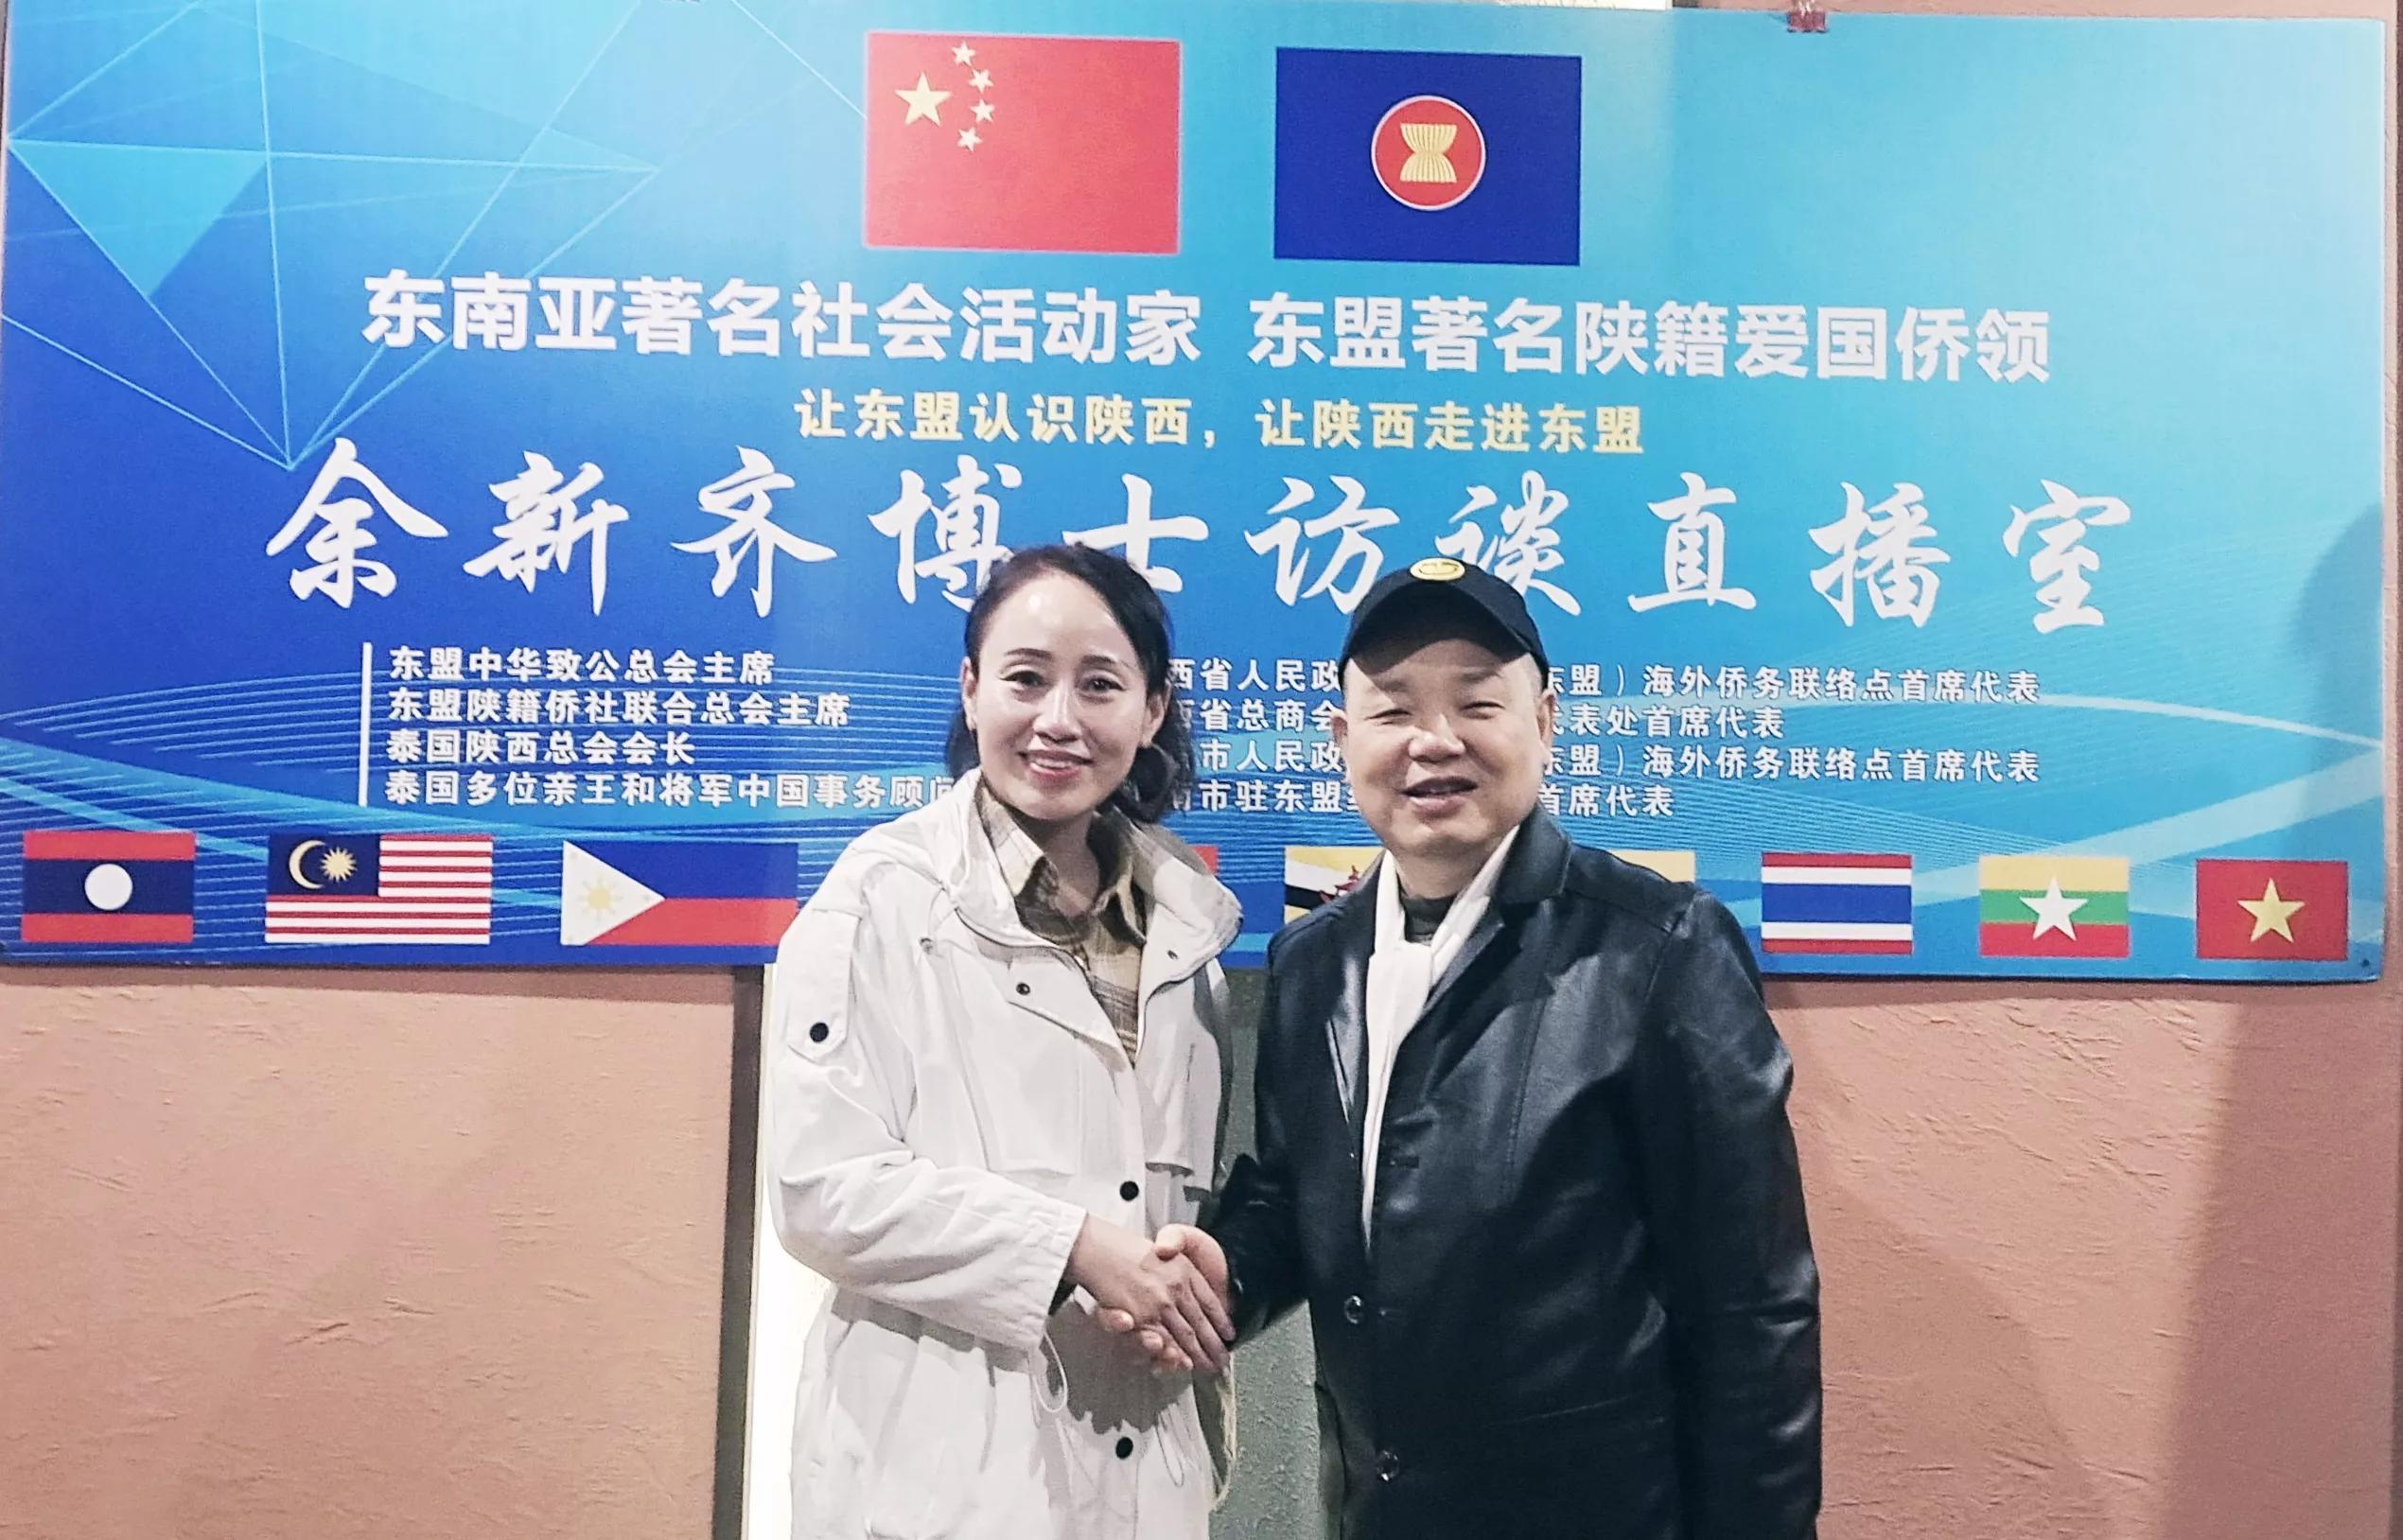 陕西自媒体界名人李万云小姐专访世界洪门组织共同主席余新齐博士